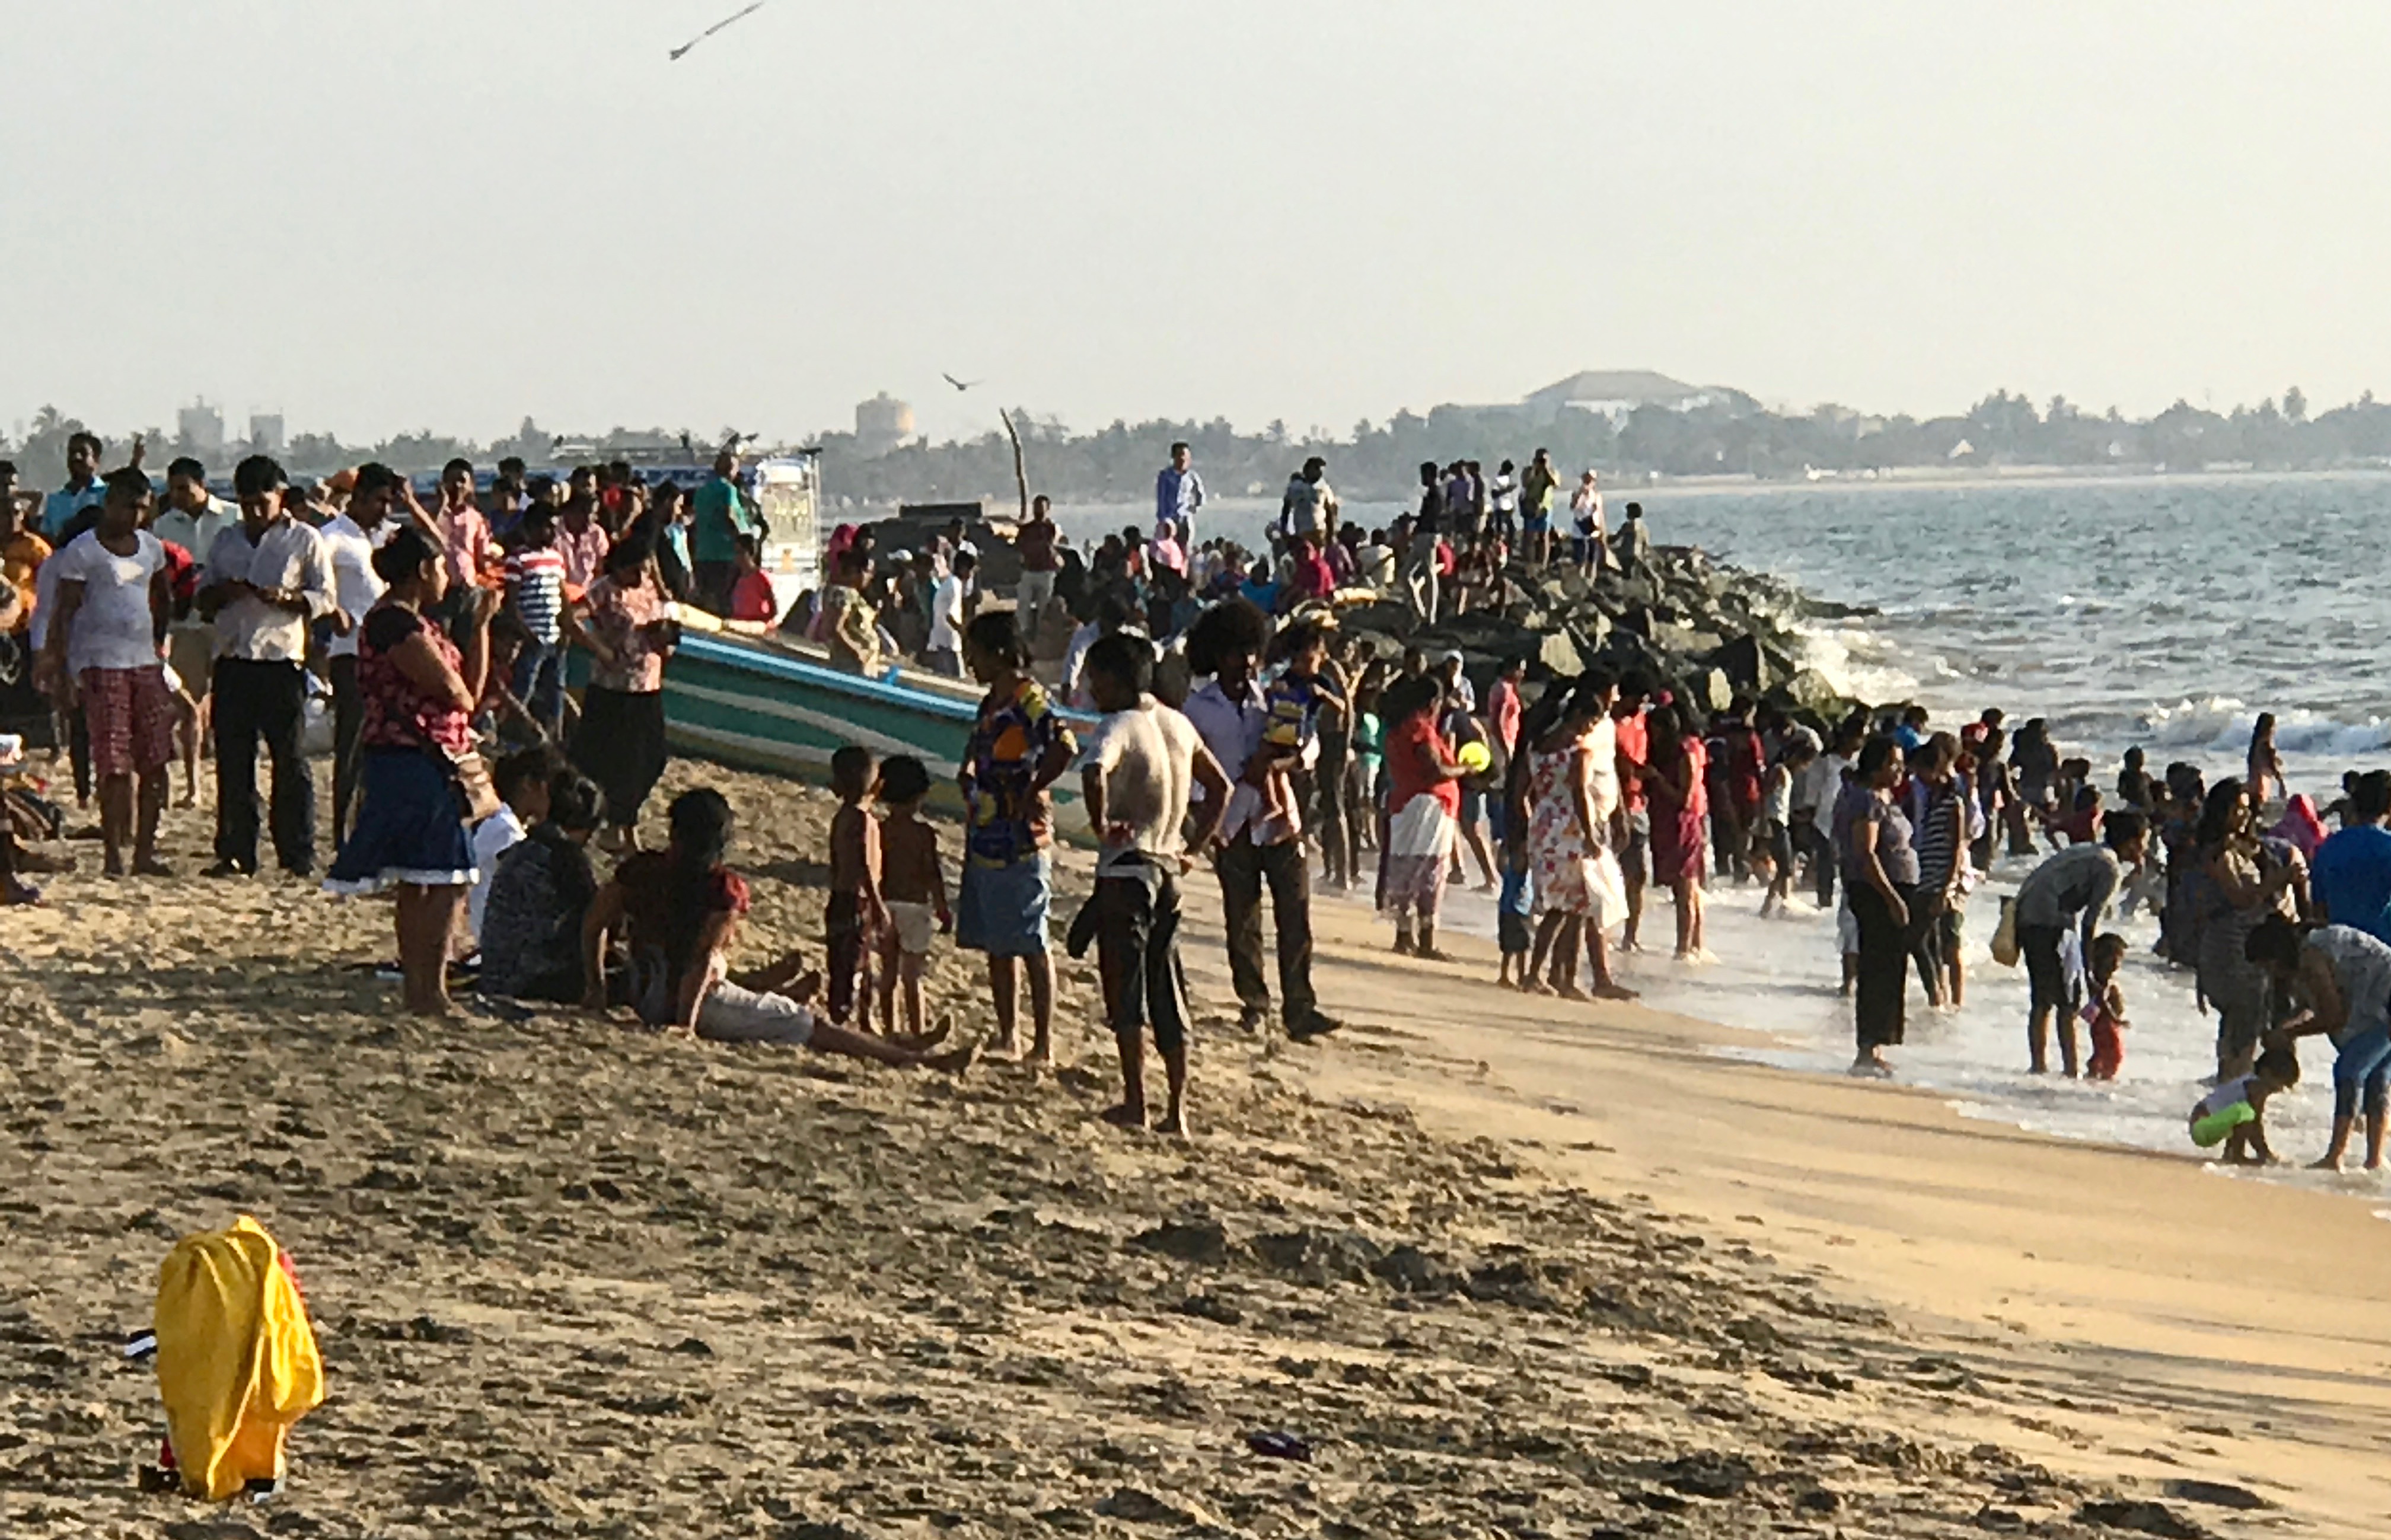 Locals Beach, Negombo